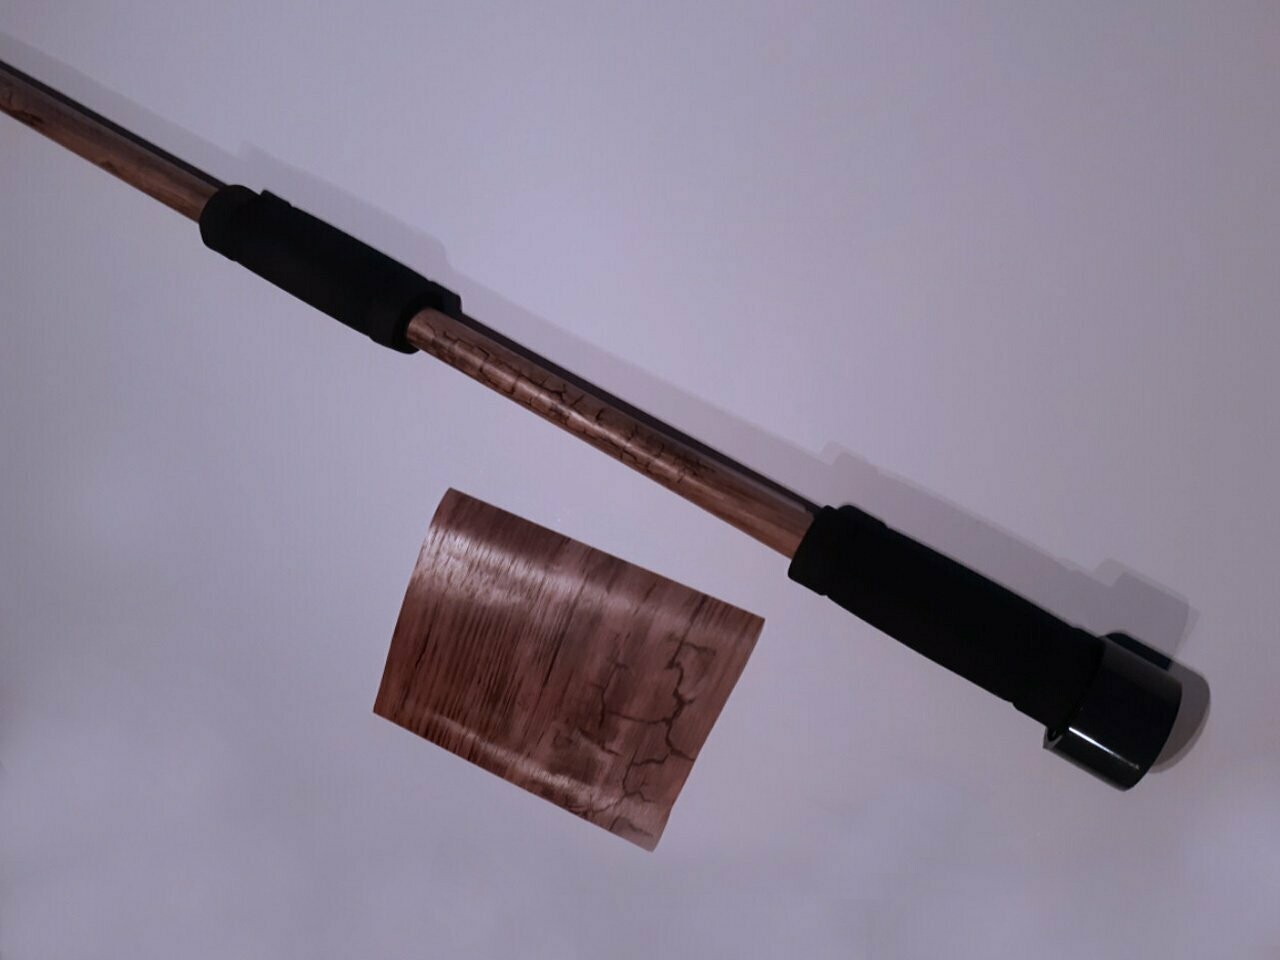 Blasrohr ca. 1,60 m mit 16 mm Innendurchmesser -
"Holz Designfolie"